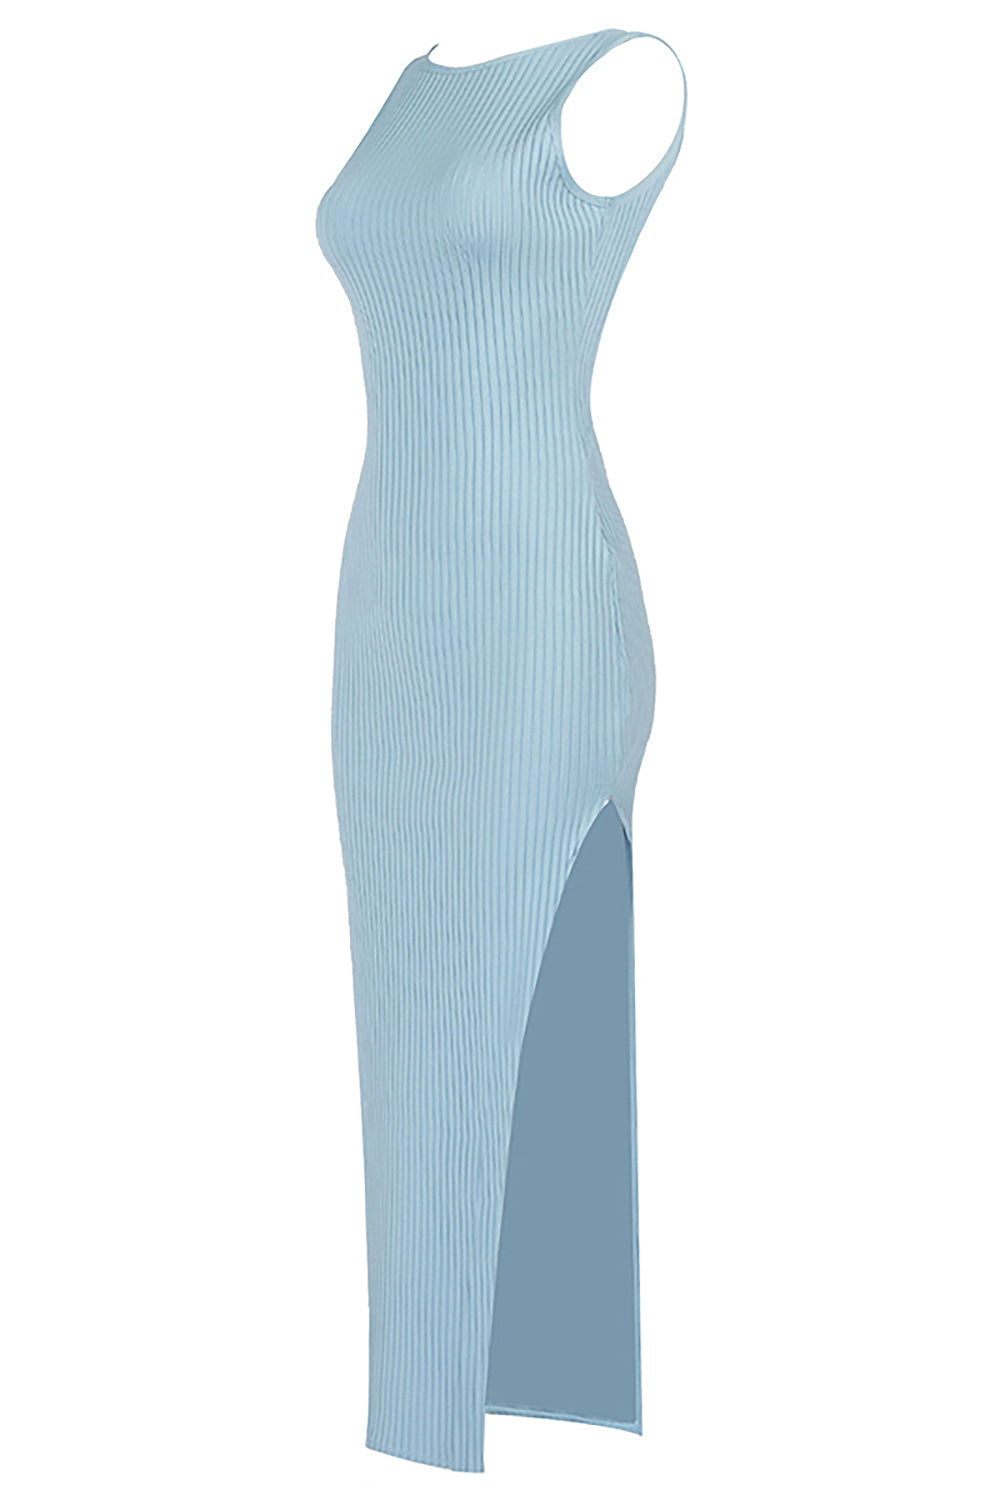 Vestido regata azul claro com recorte frontal e fenda lateral